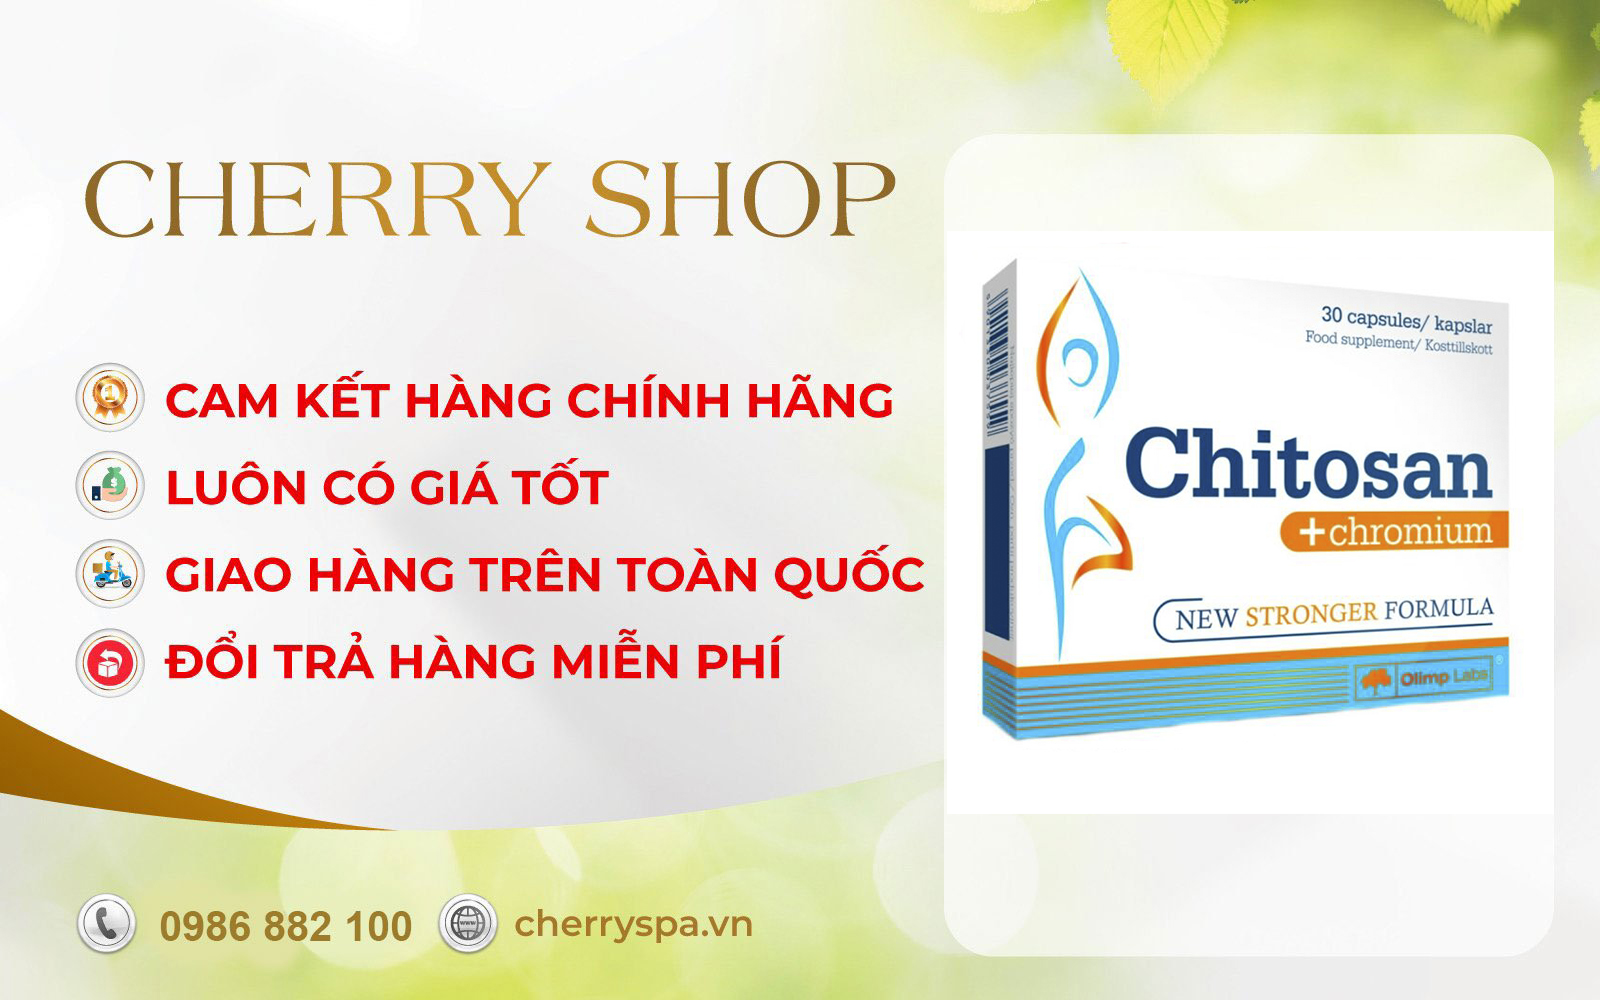 cherry spa đổi trả hàng Chitosan + Chromium